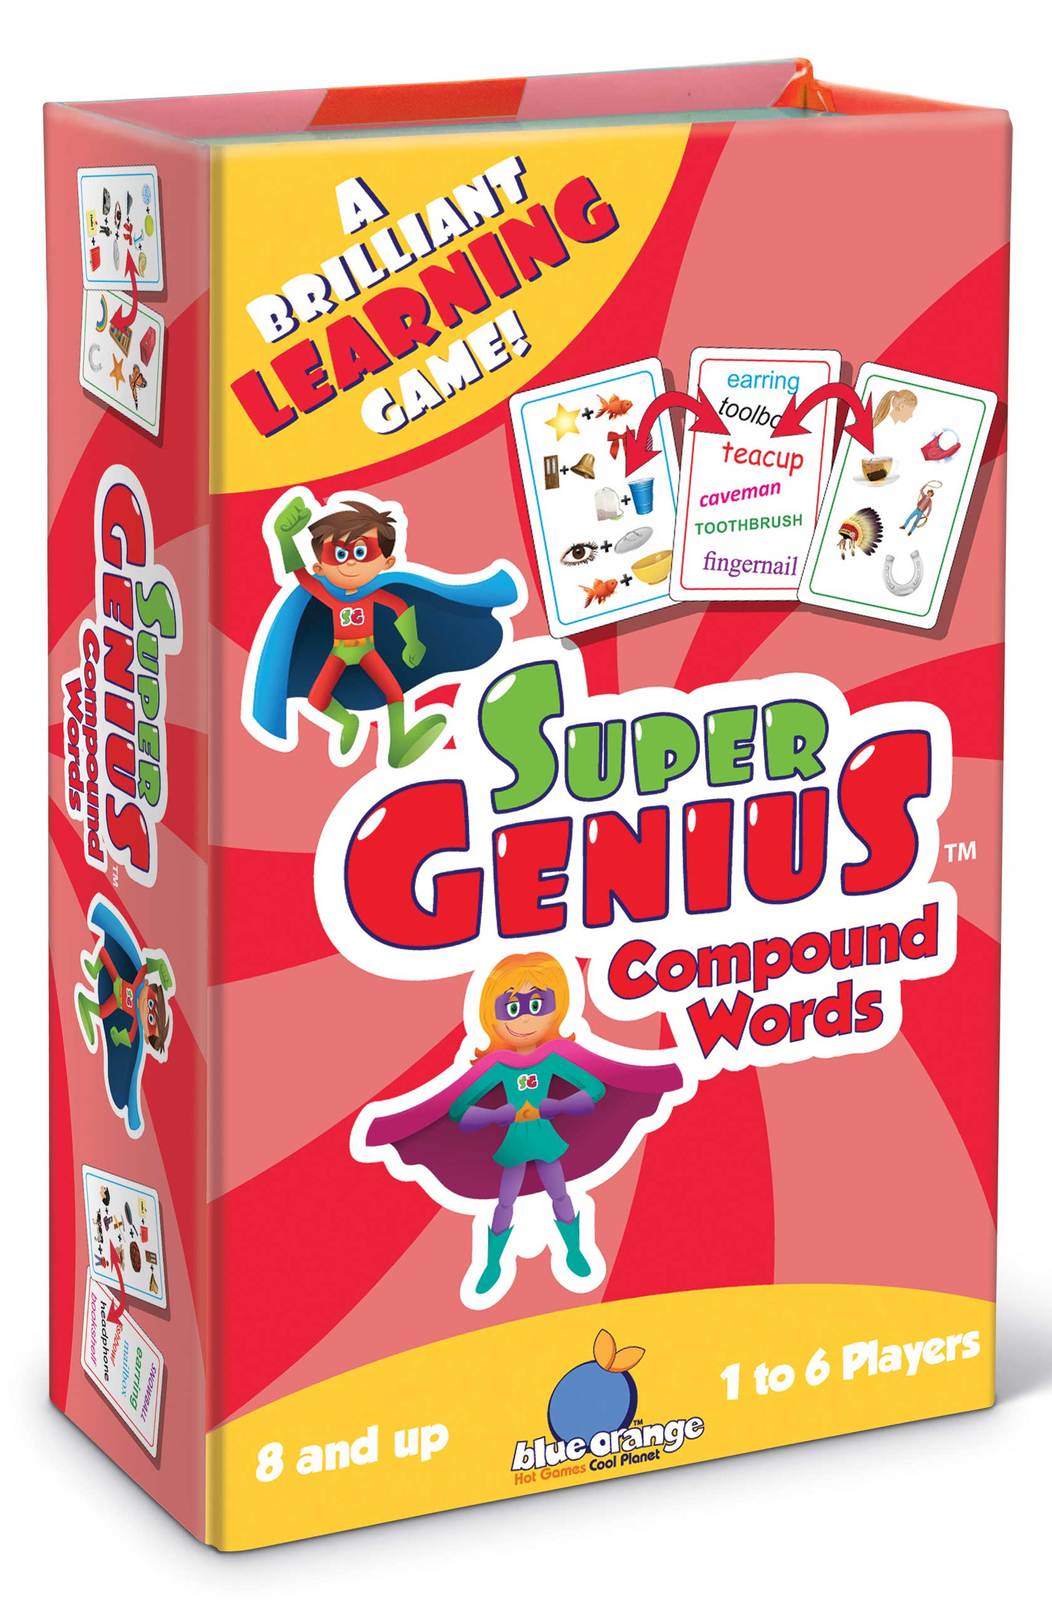 Super Genius - Compound Words